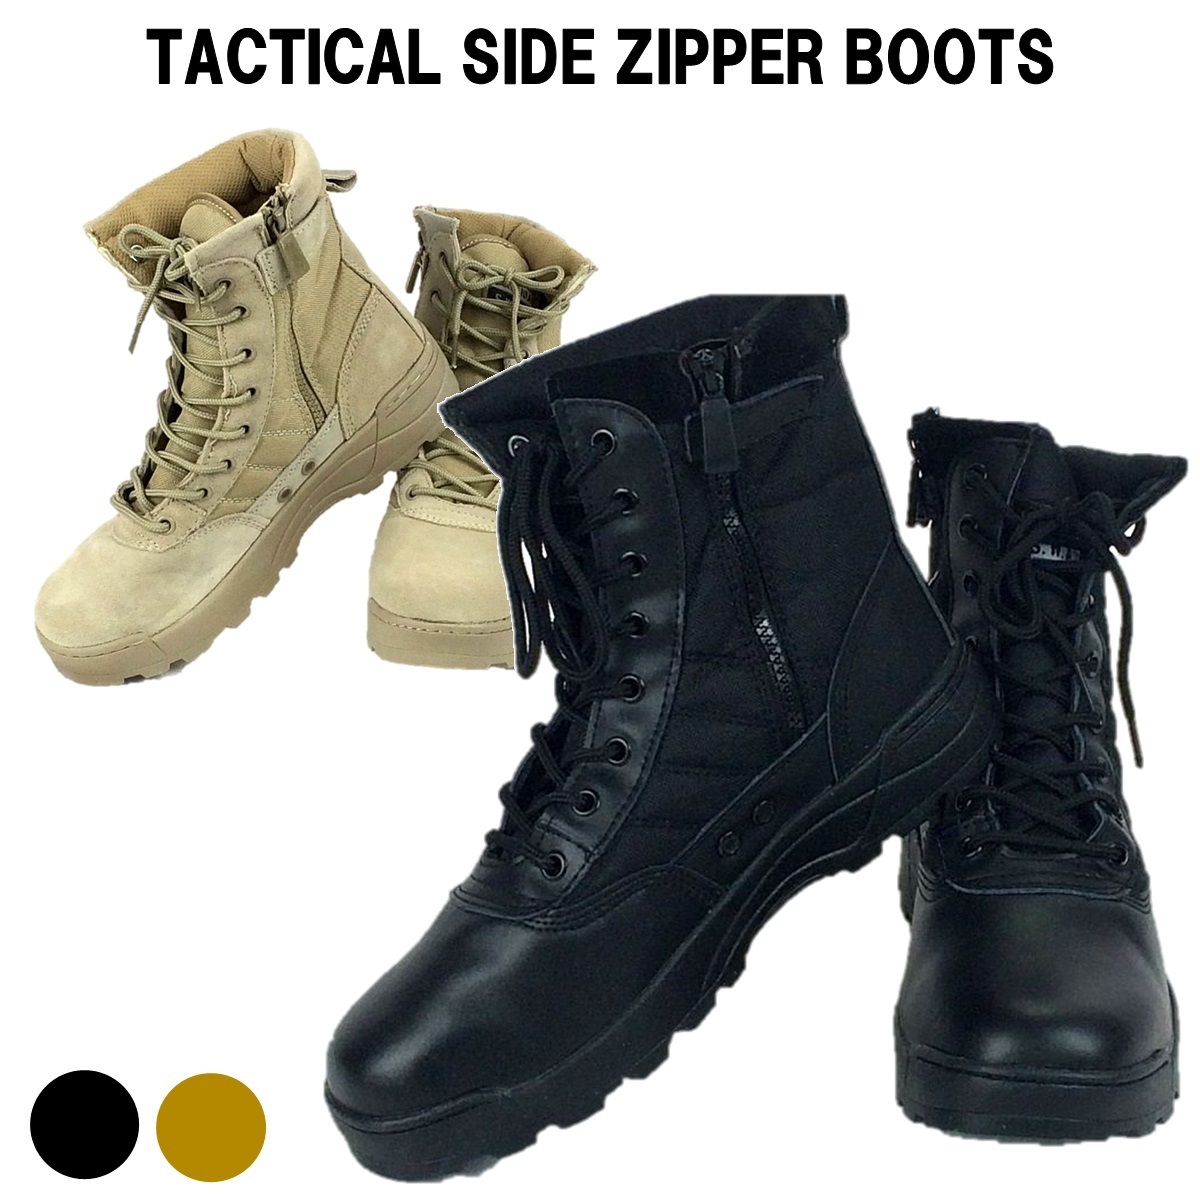  милитари ботинки Tacty karu ботинки combat ботинки rider ботинки рабочая обувь обувь боковой молния скумбиря ge мужской ботинки TAN24.5cm